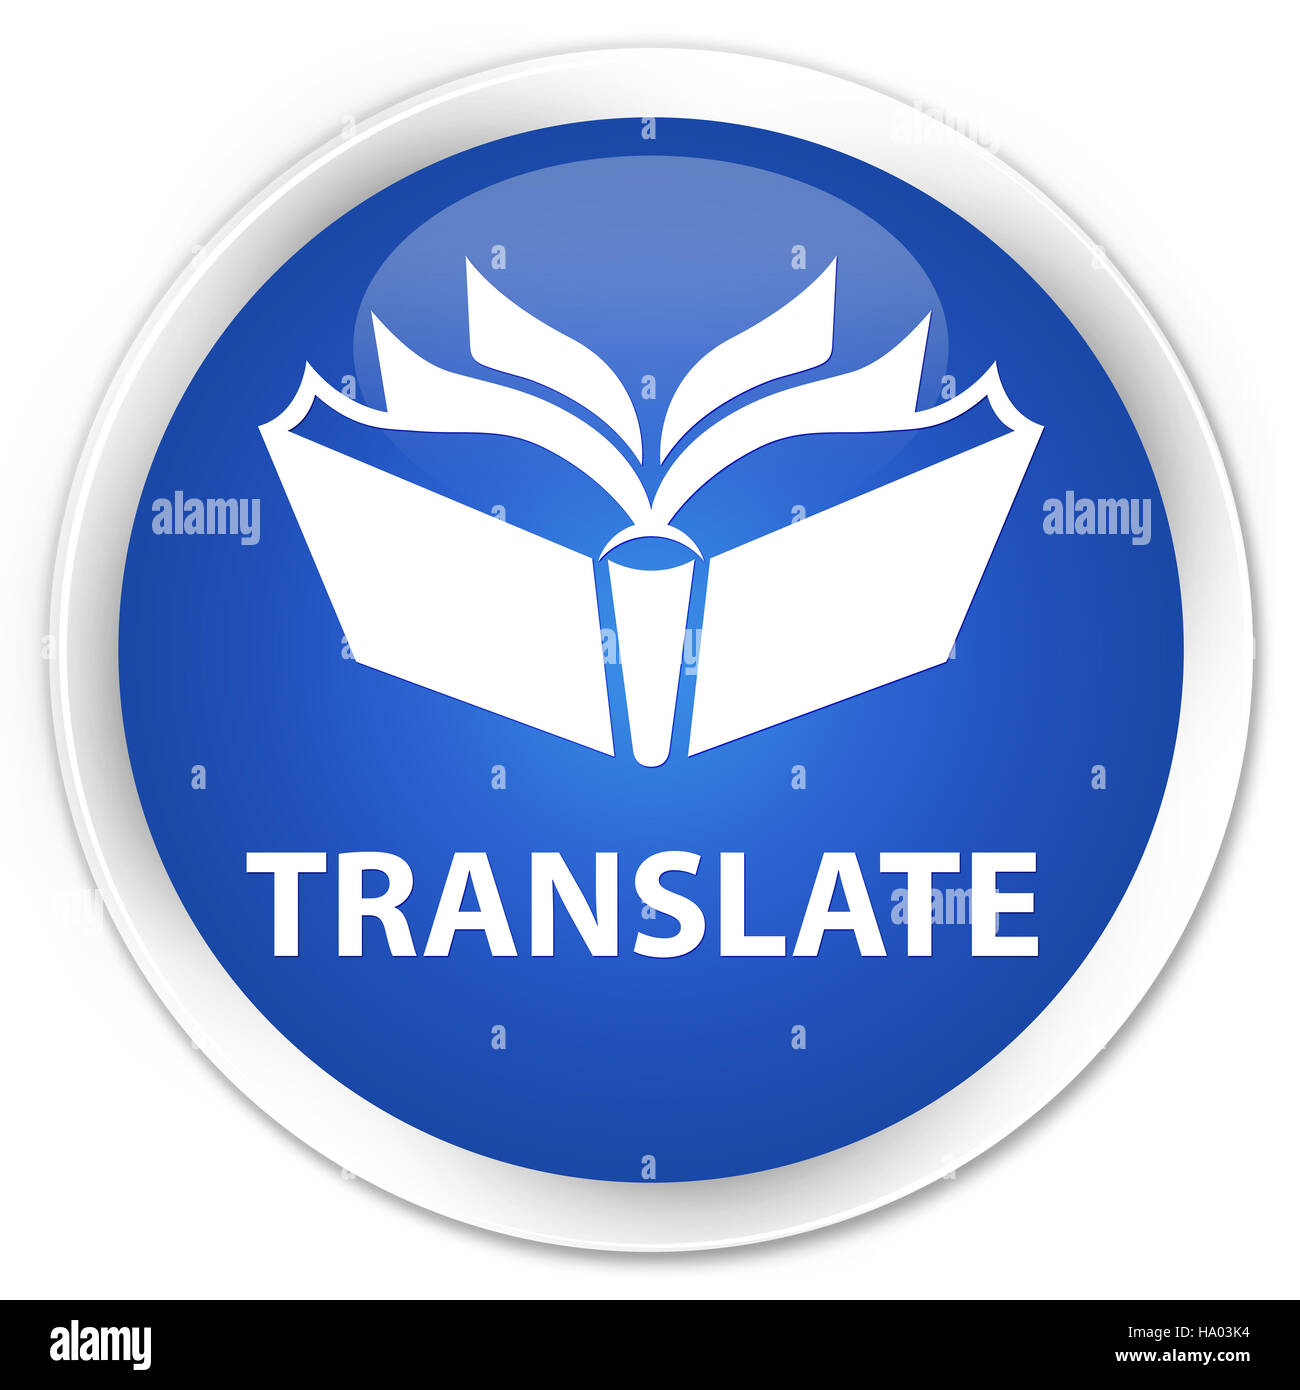 Translate isolé sur le bouton rond bleu premium abstract illustration Banque D'Images